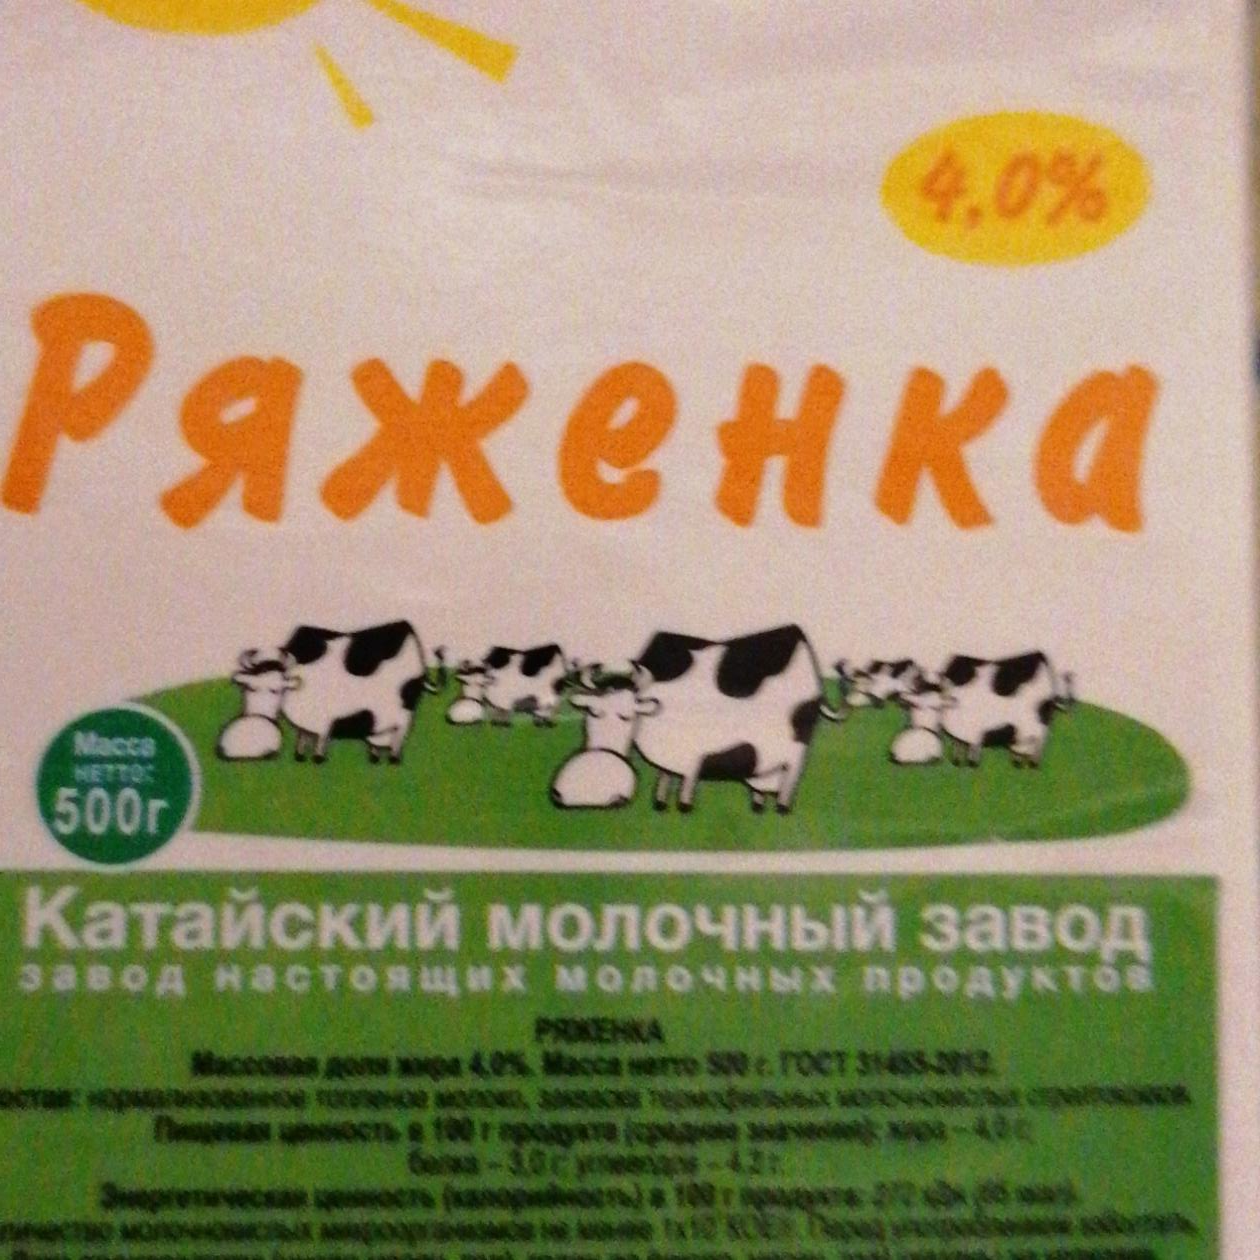 Фото - Ряженка 4% Катайский молочный завод